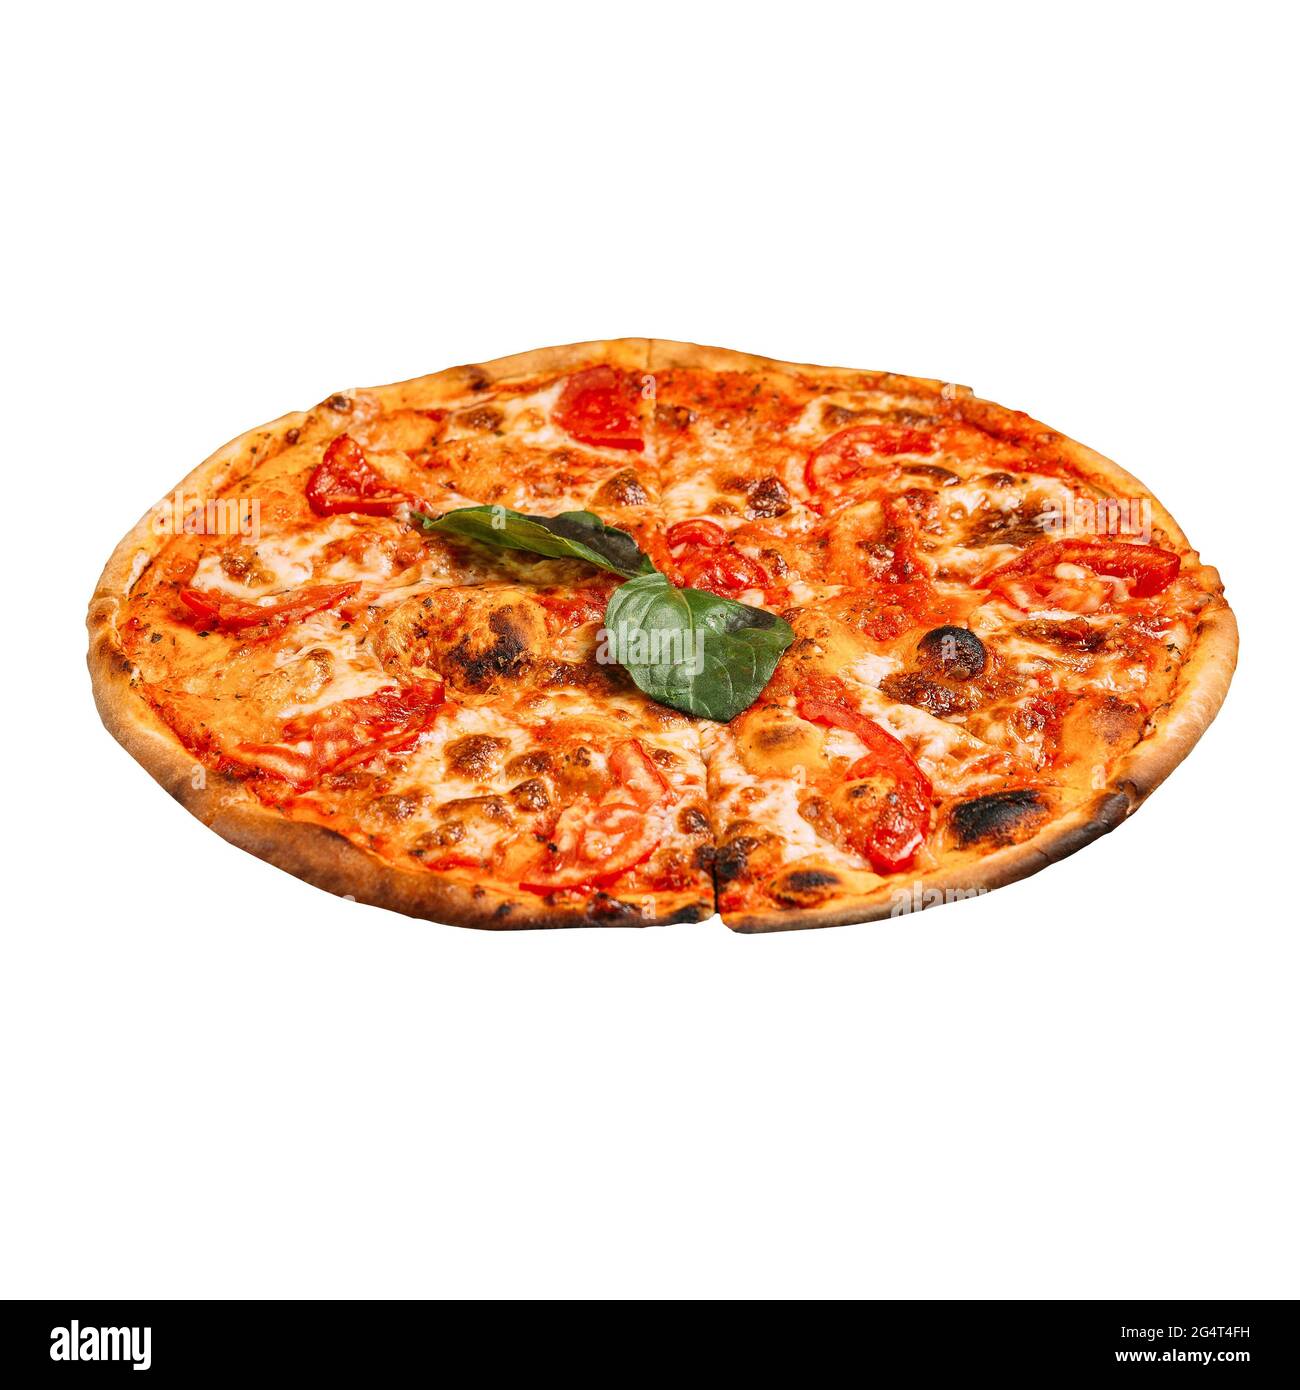 Pizza margarita isolata con pomodori Foto Stock